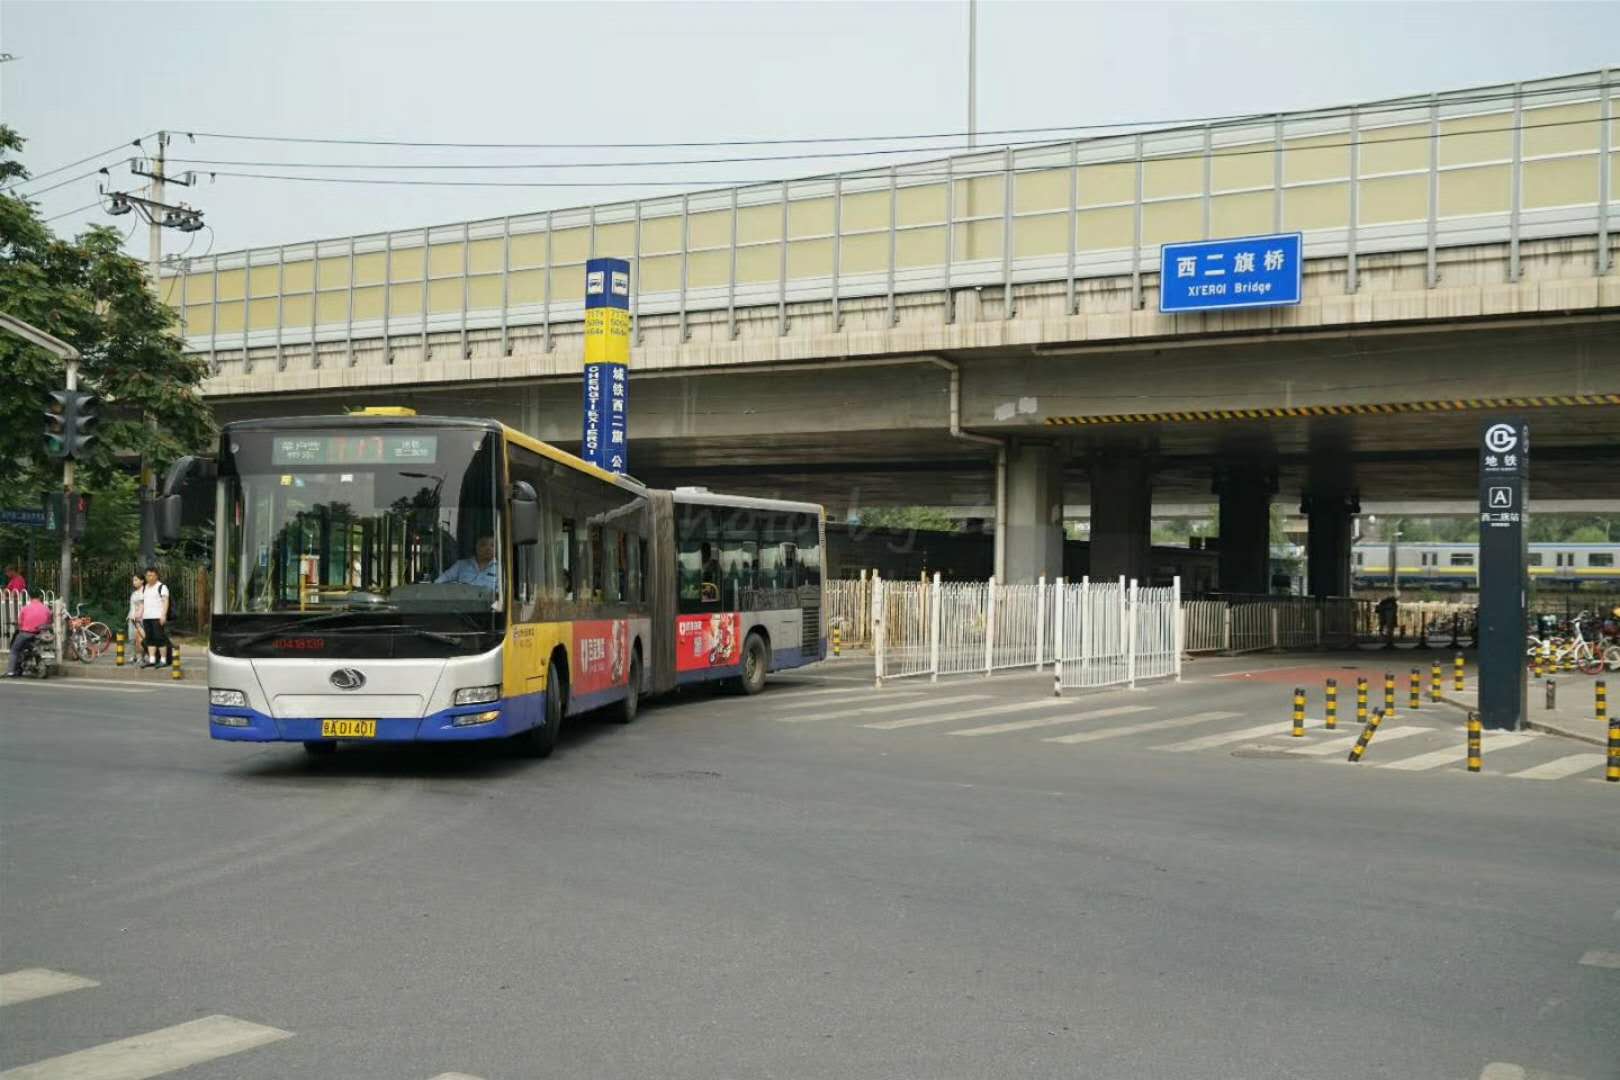 曾几何时,白颐路上面716(697),717,718,三驾马车成为白颐路上北京巴士